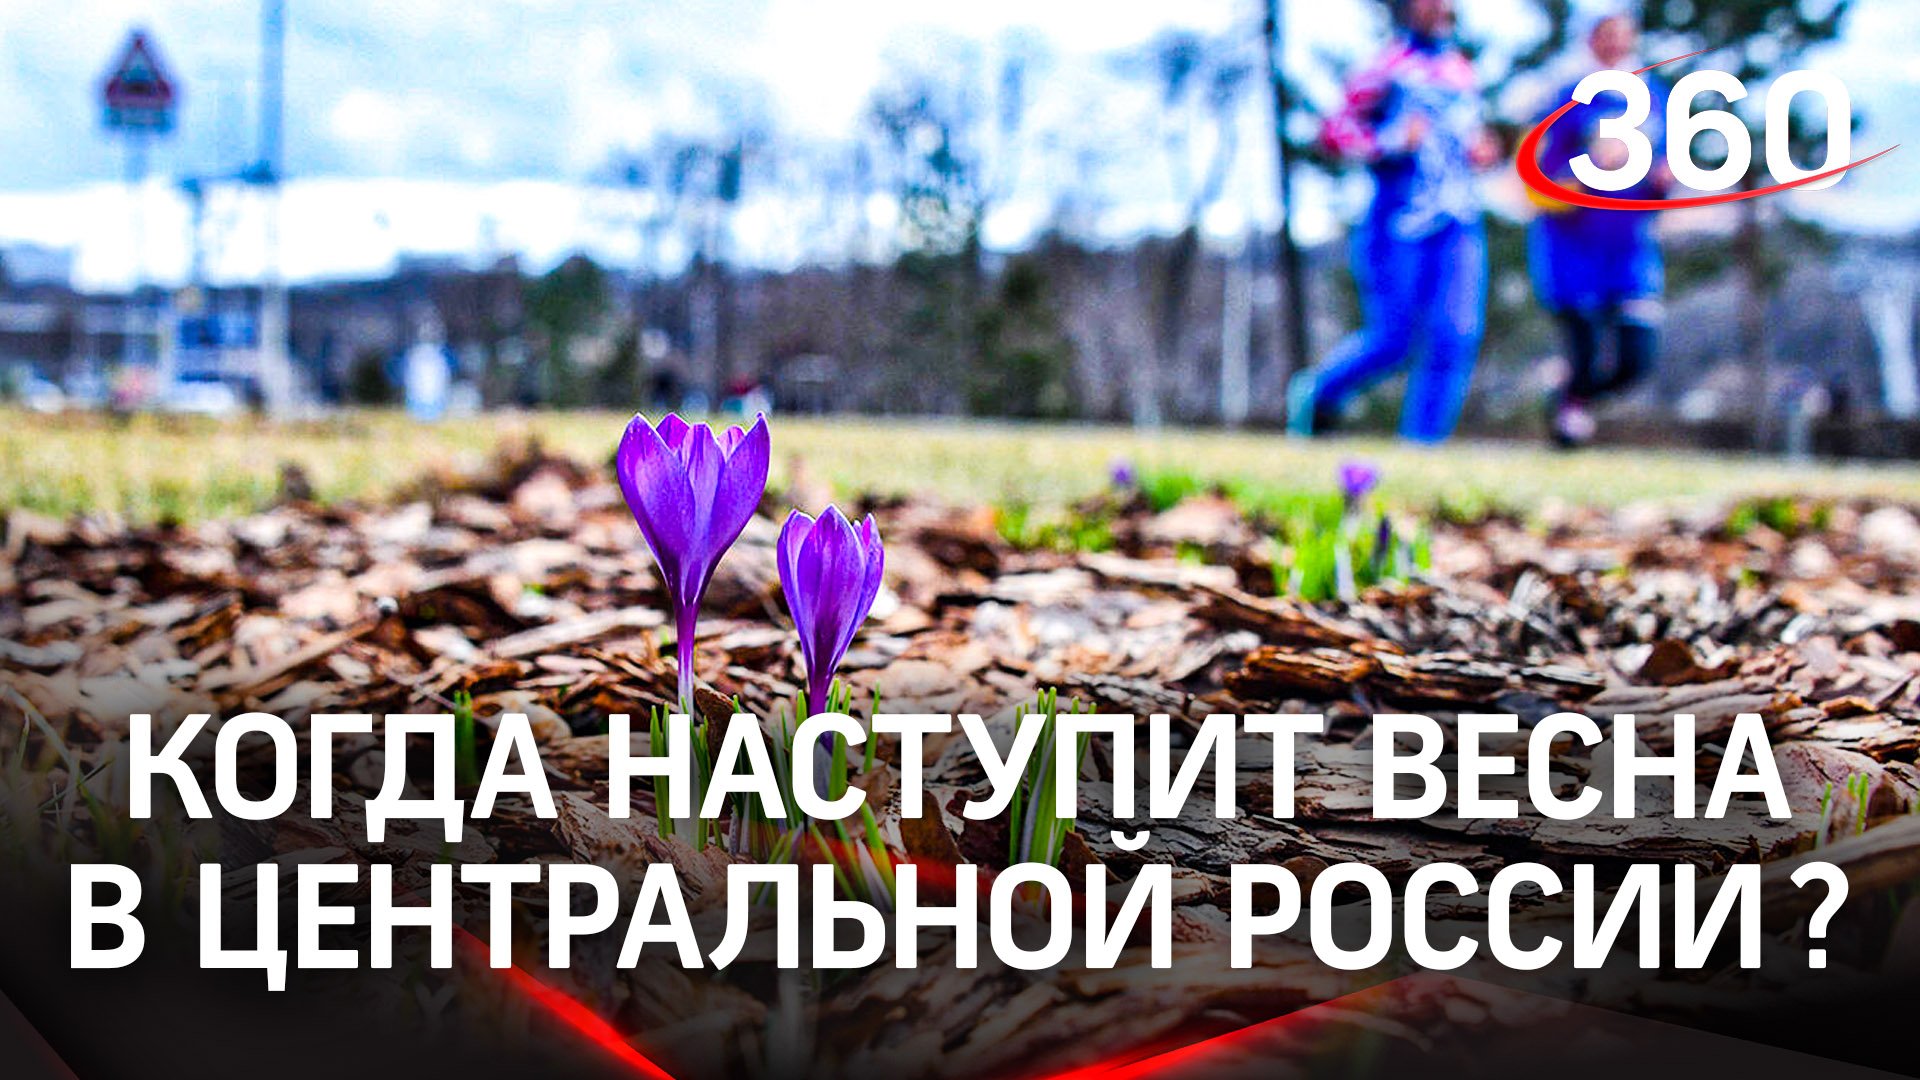 «Не раньше конца марта»: когда придет весна в центральную часть России